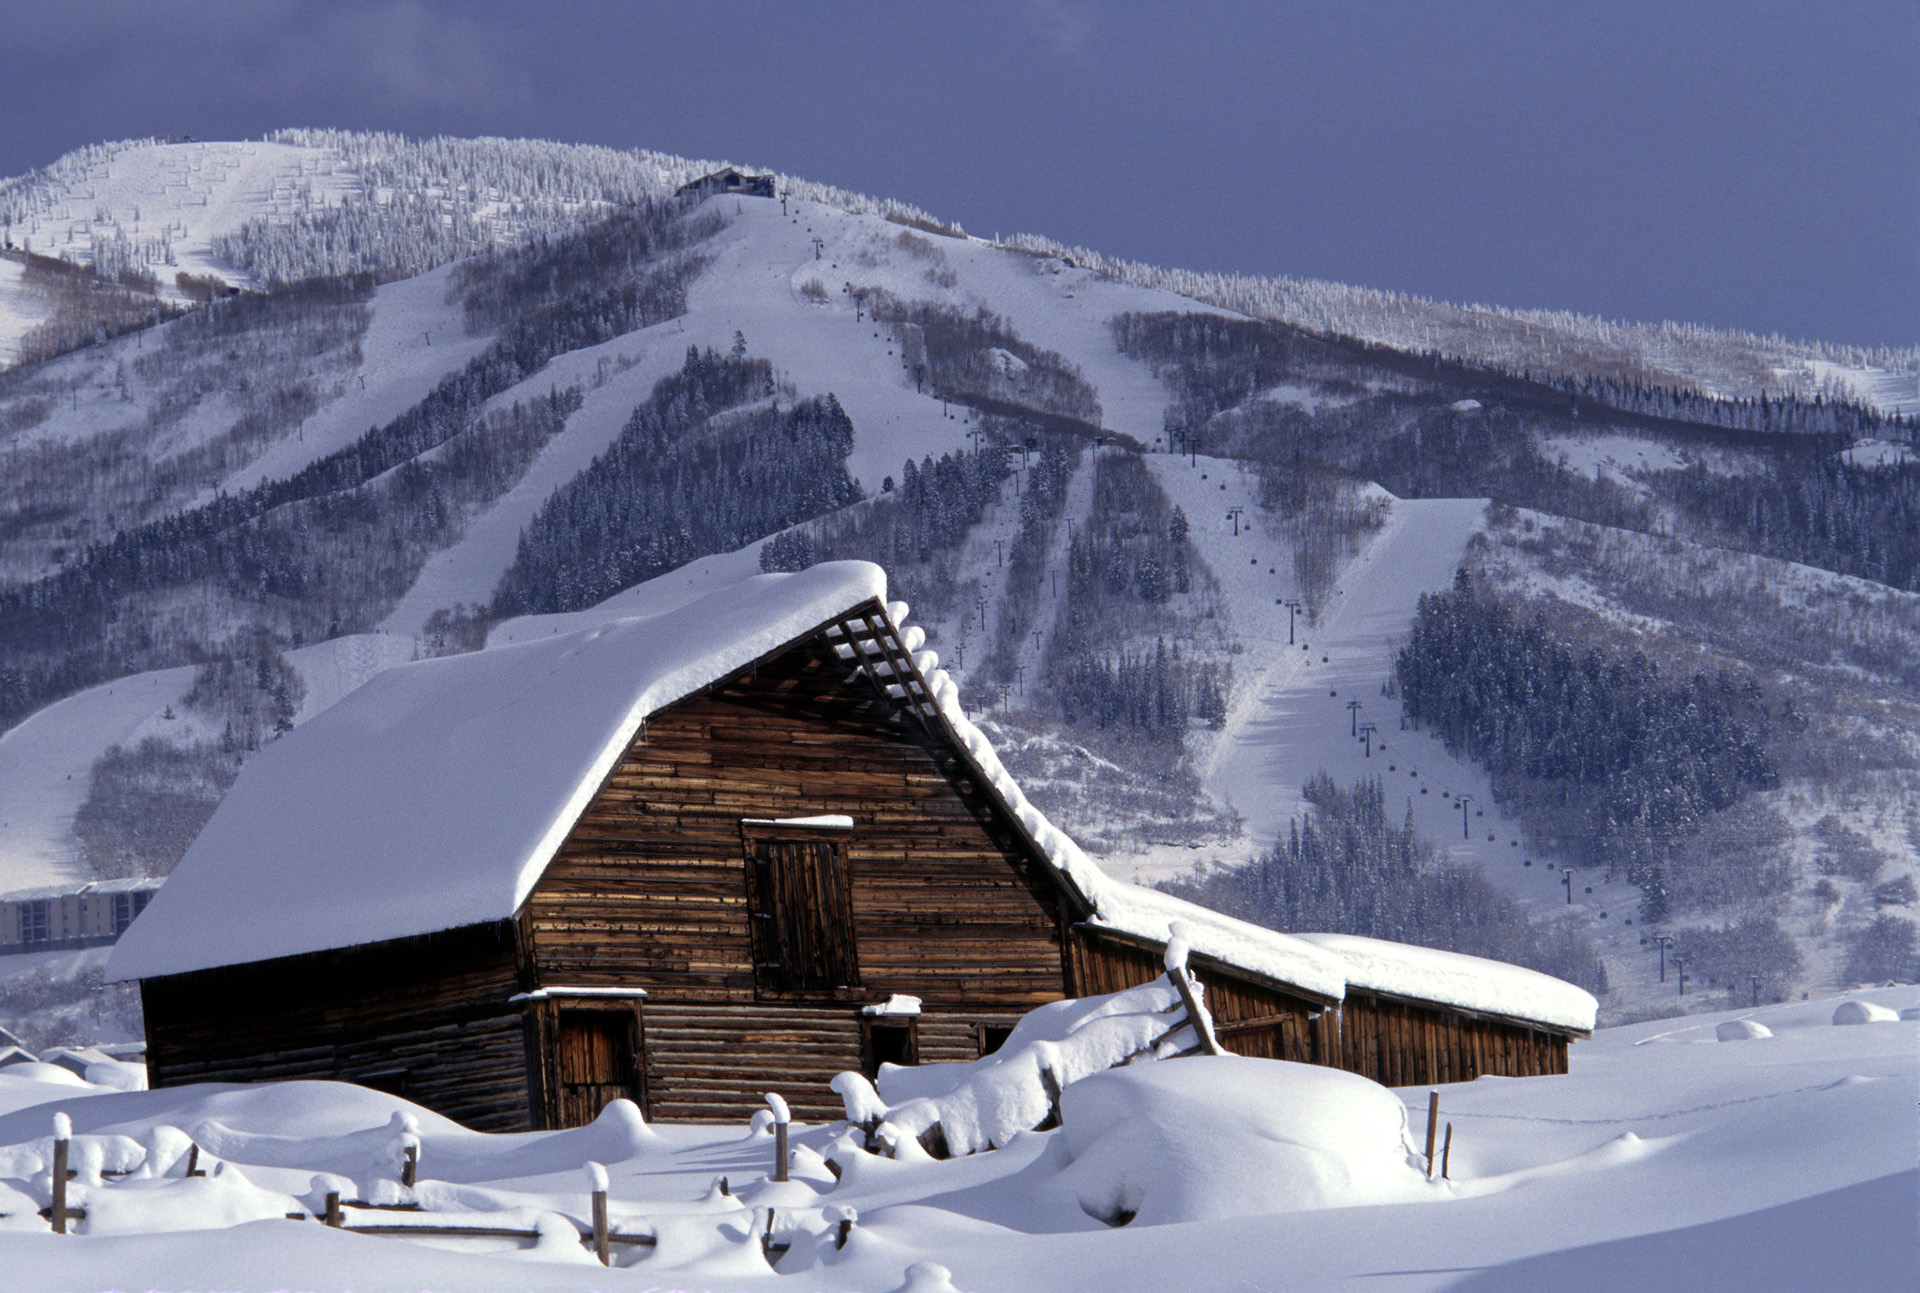 Quienes están organizando sus vacaciones a pura nieve es bueno conocer las múltiples posibilidades que brinda el Ikon Pass. Son en total 54 destinos